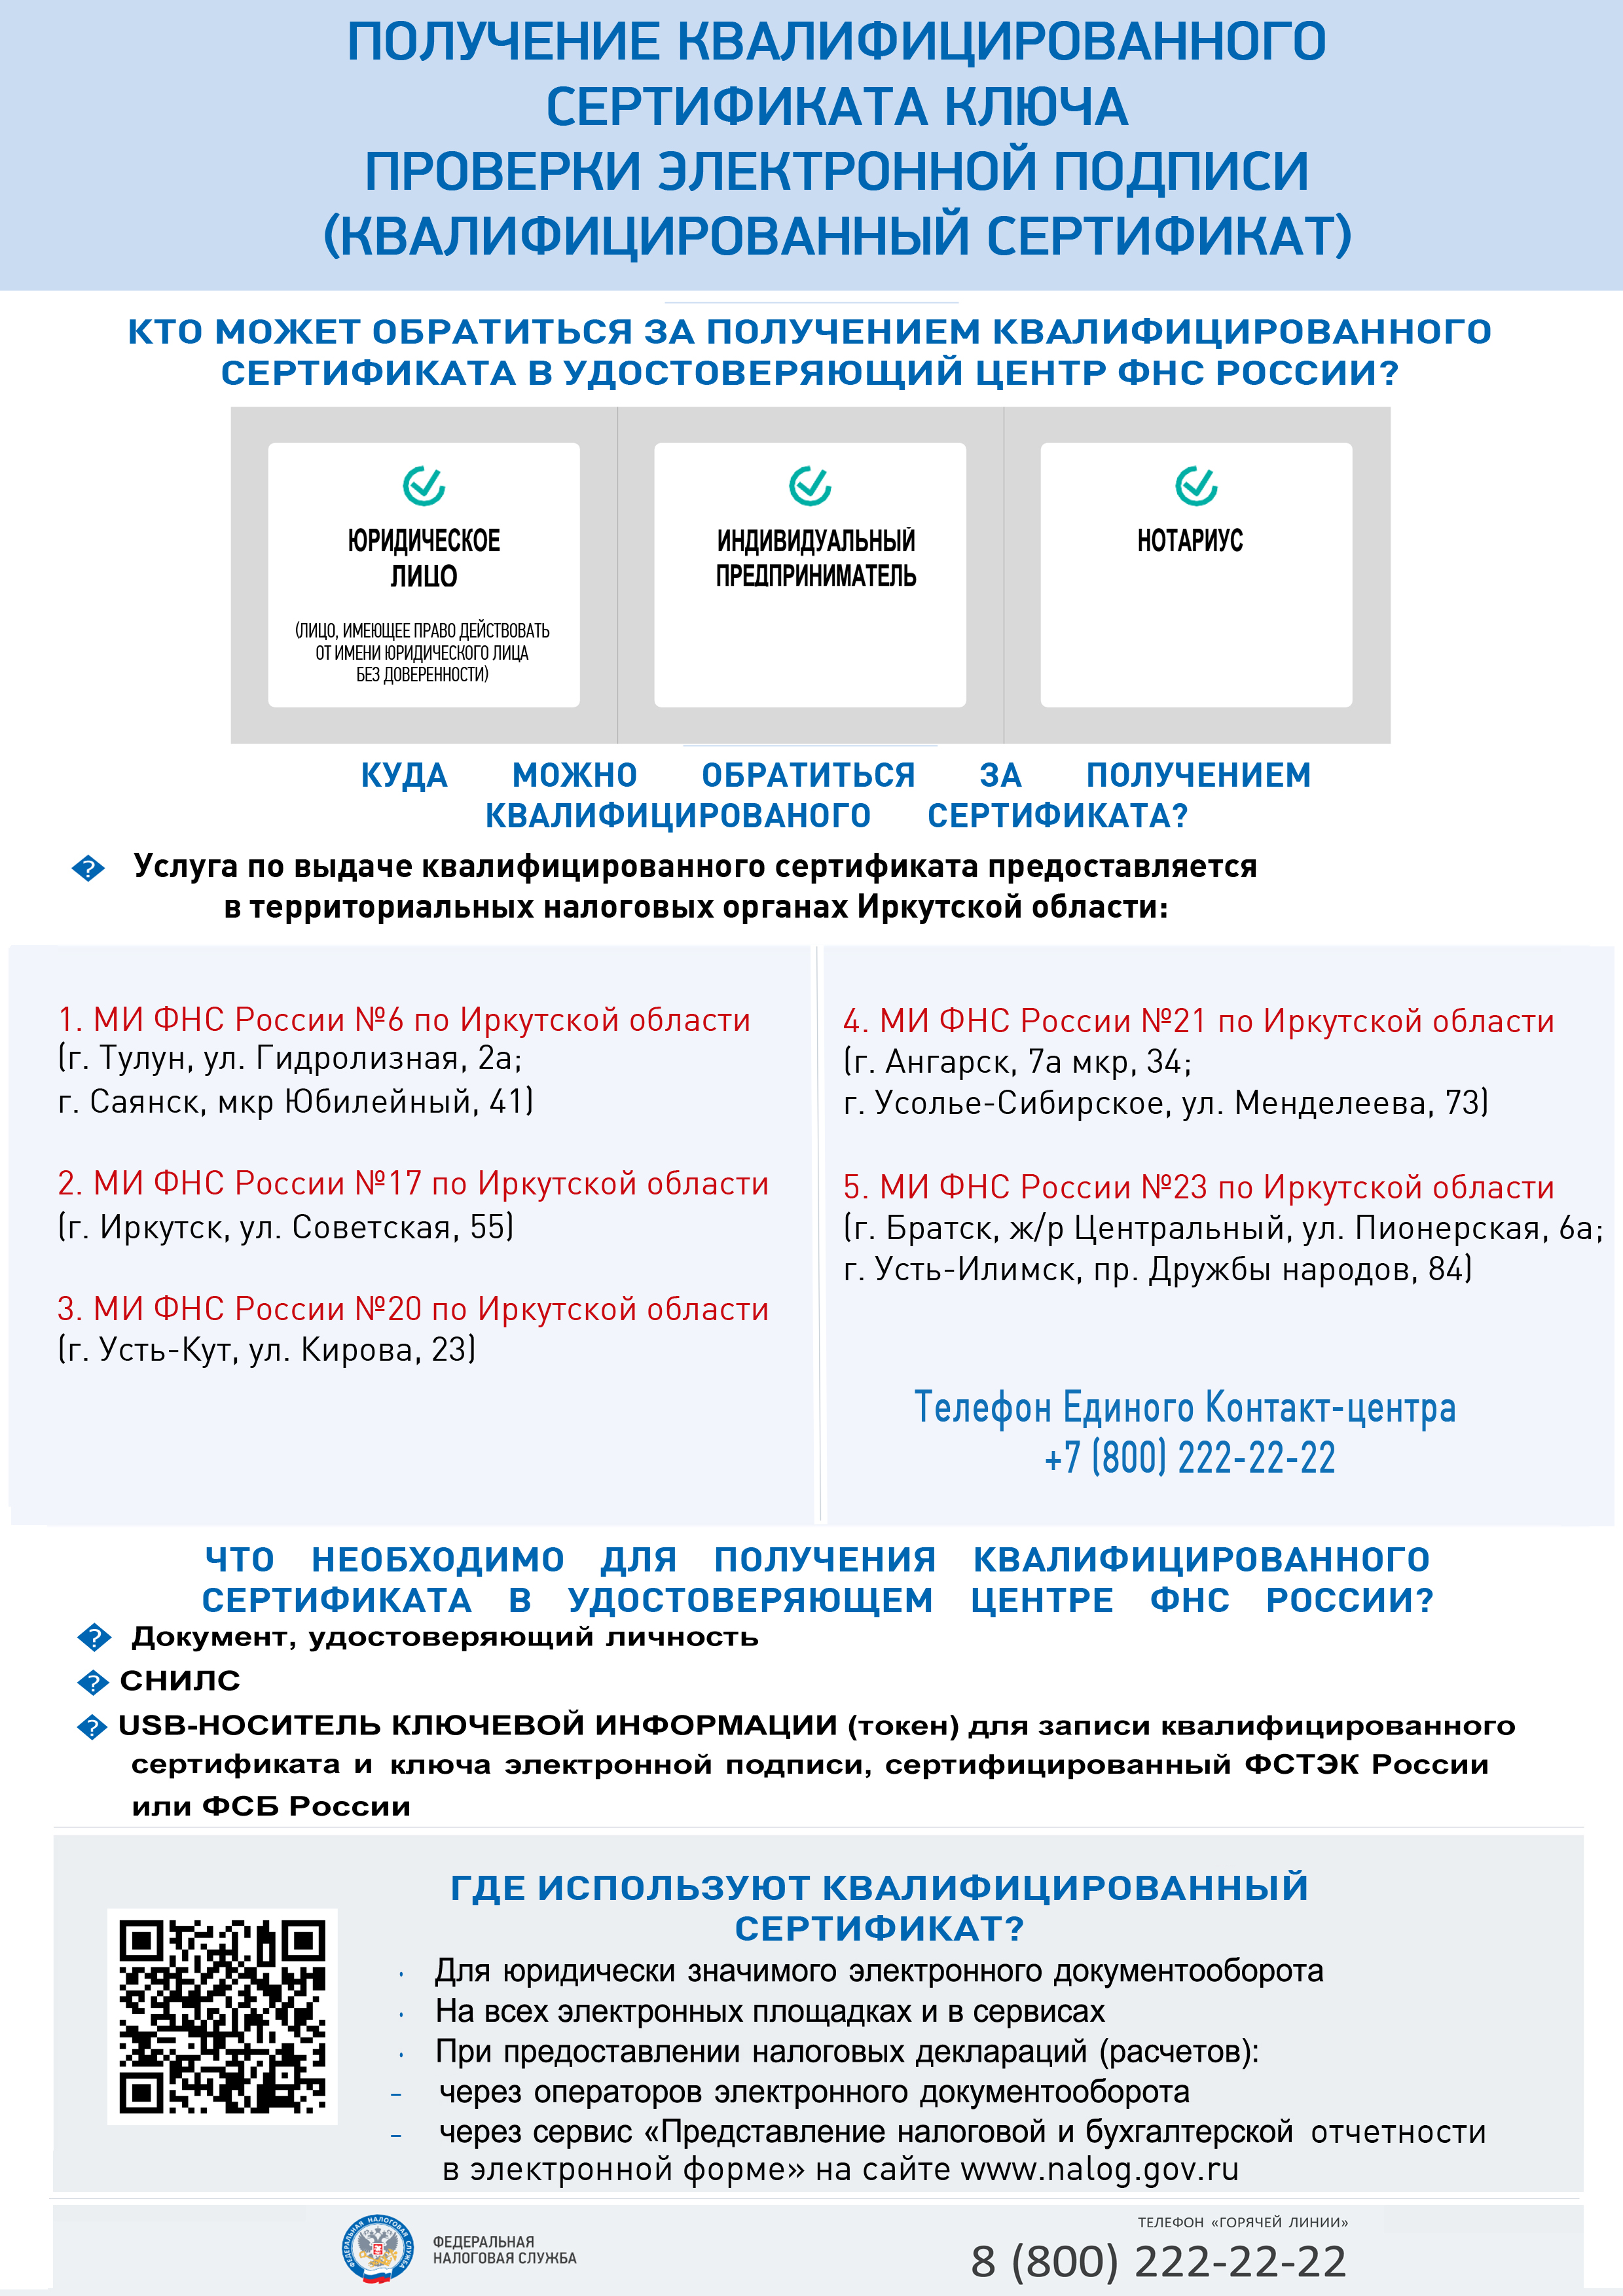 Контрольная работа: Особенности налоговой системы РФ